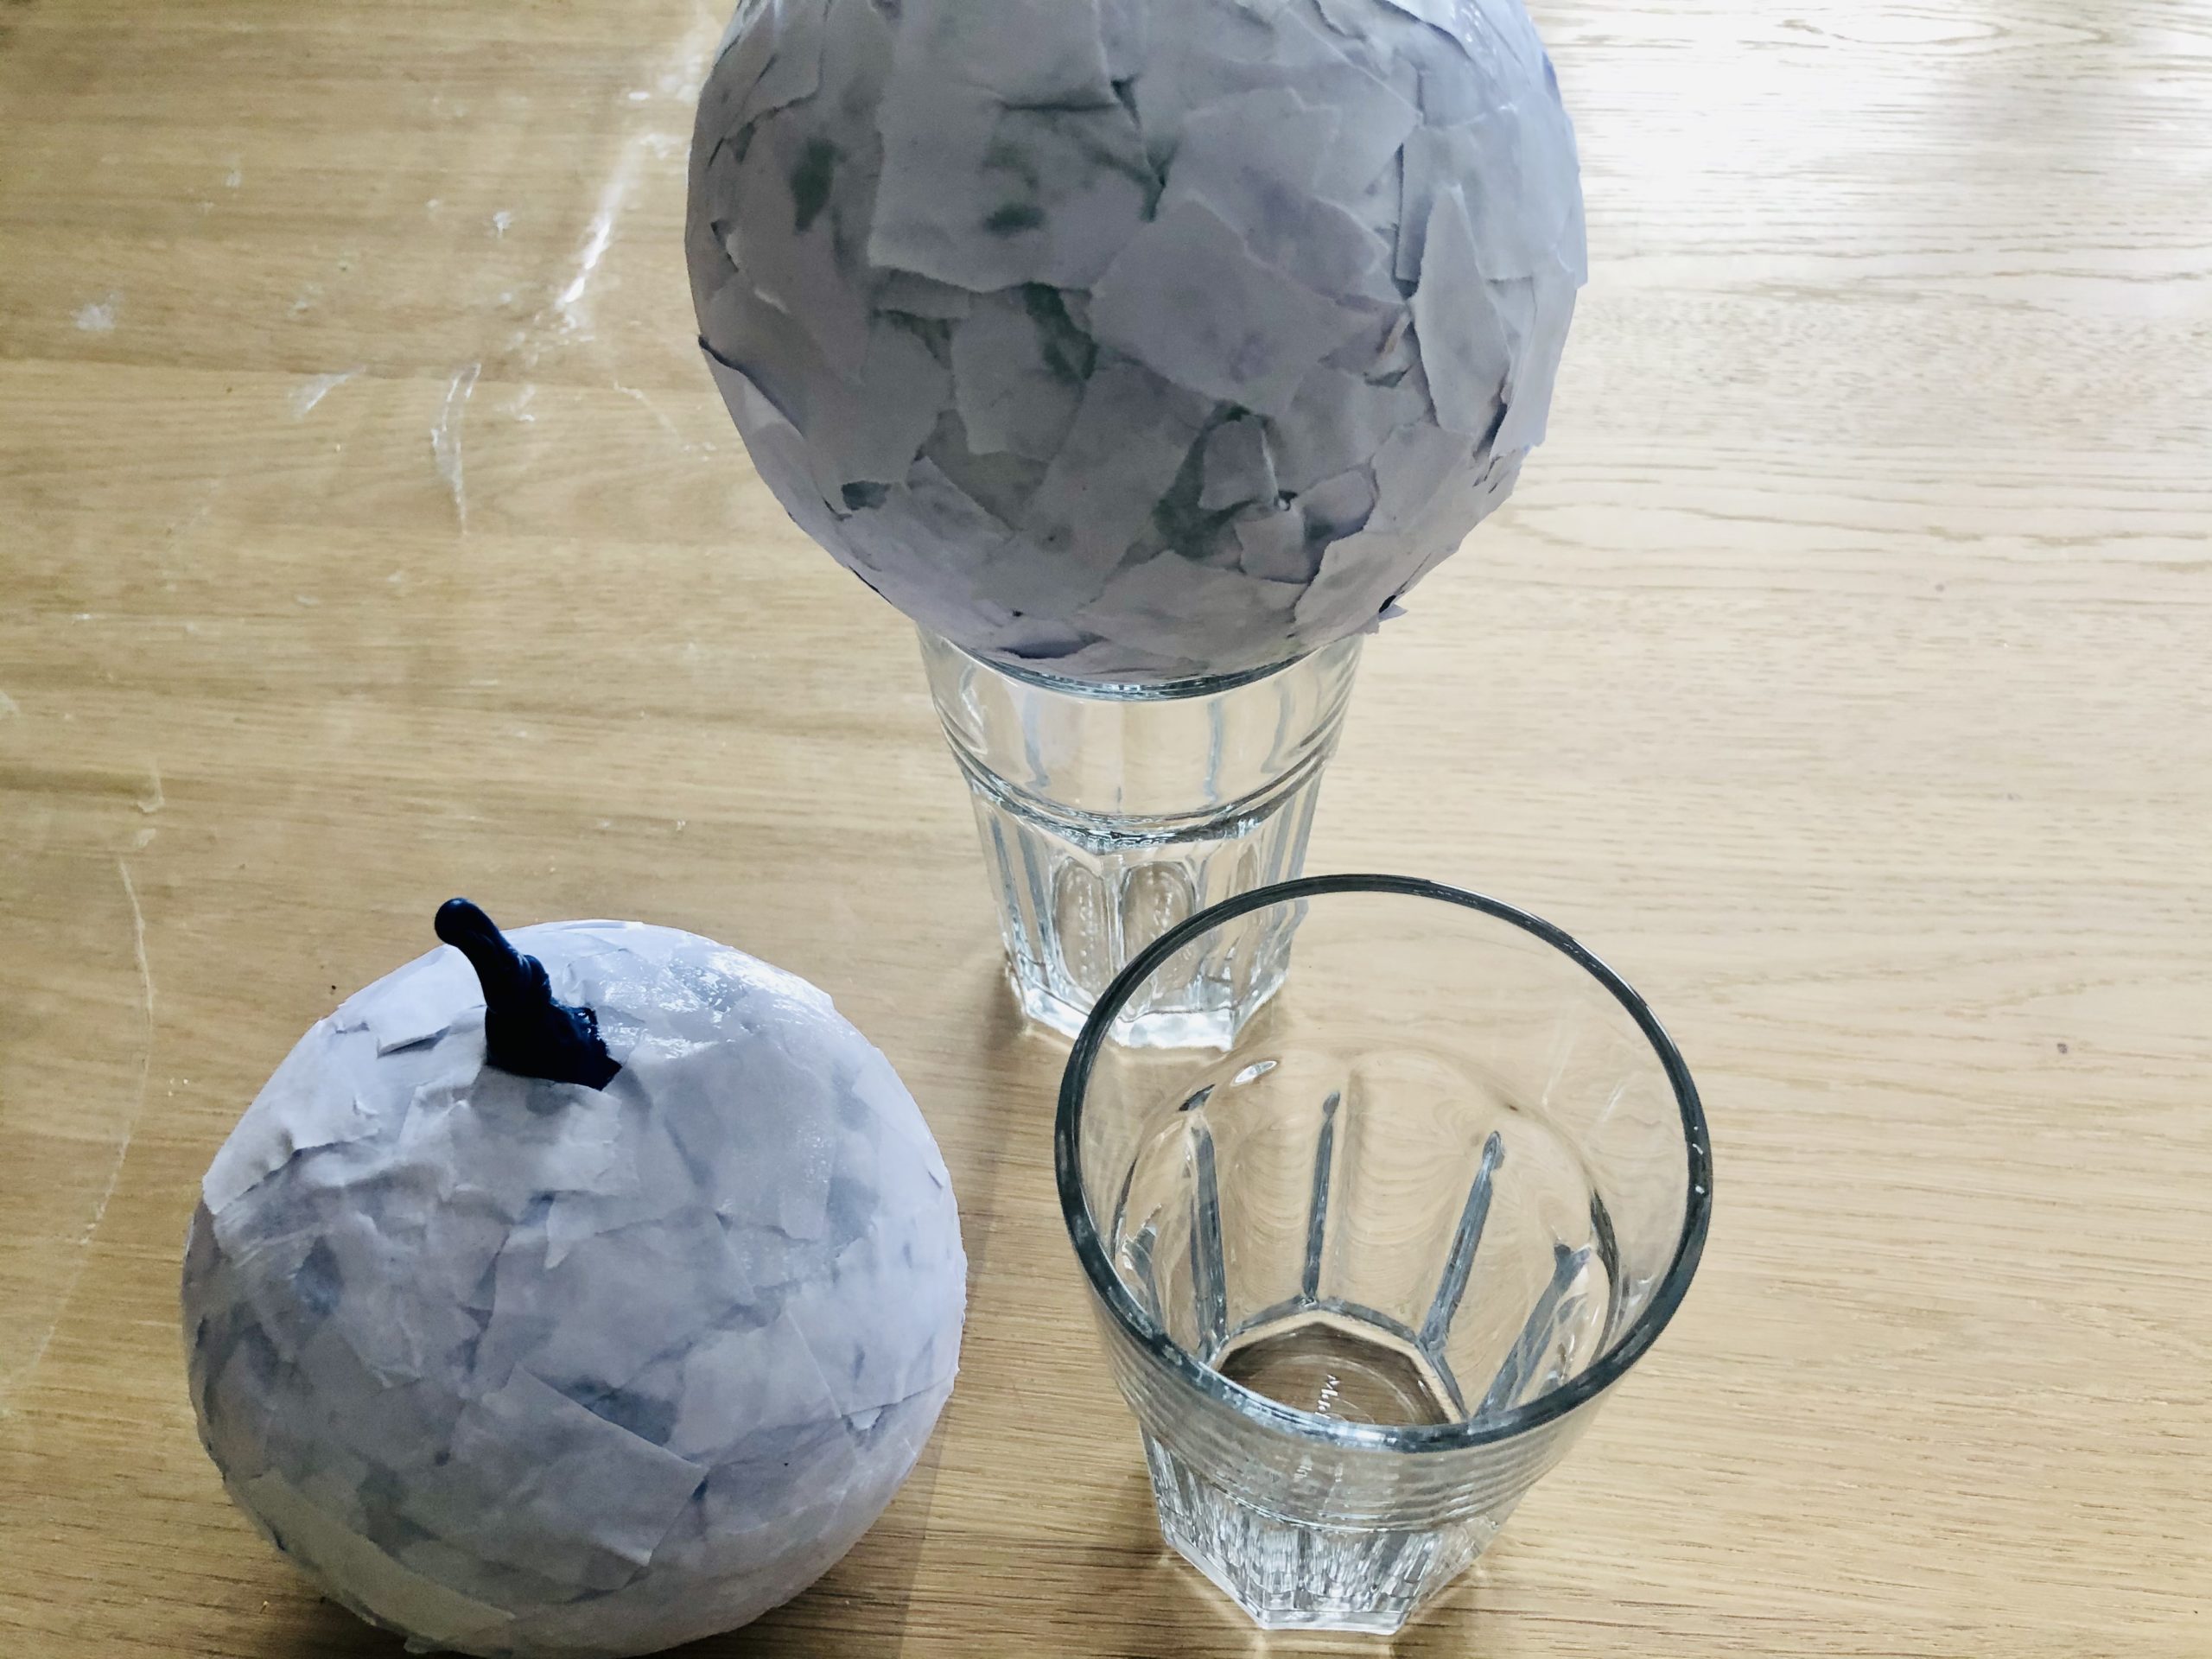 Bild zum Schritt 6 für das Bastel- und DIY-Abenteuer für Kinder: 'Setzt die Luftballons auf ein Glas und stellt sie so...'